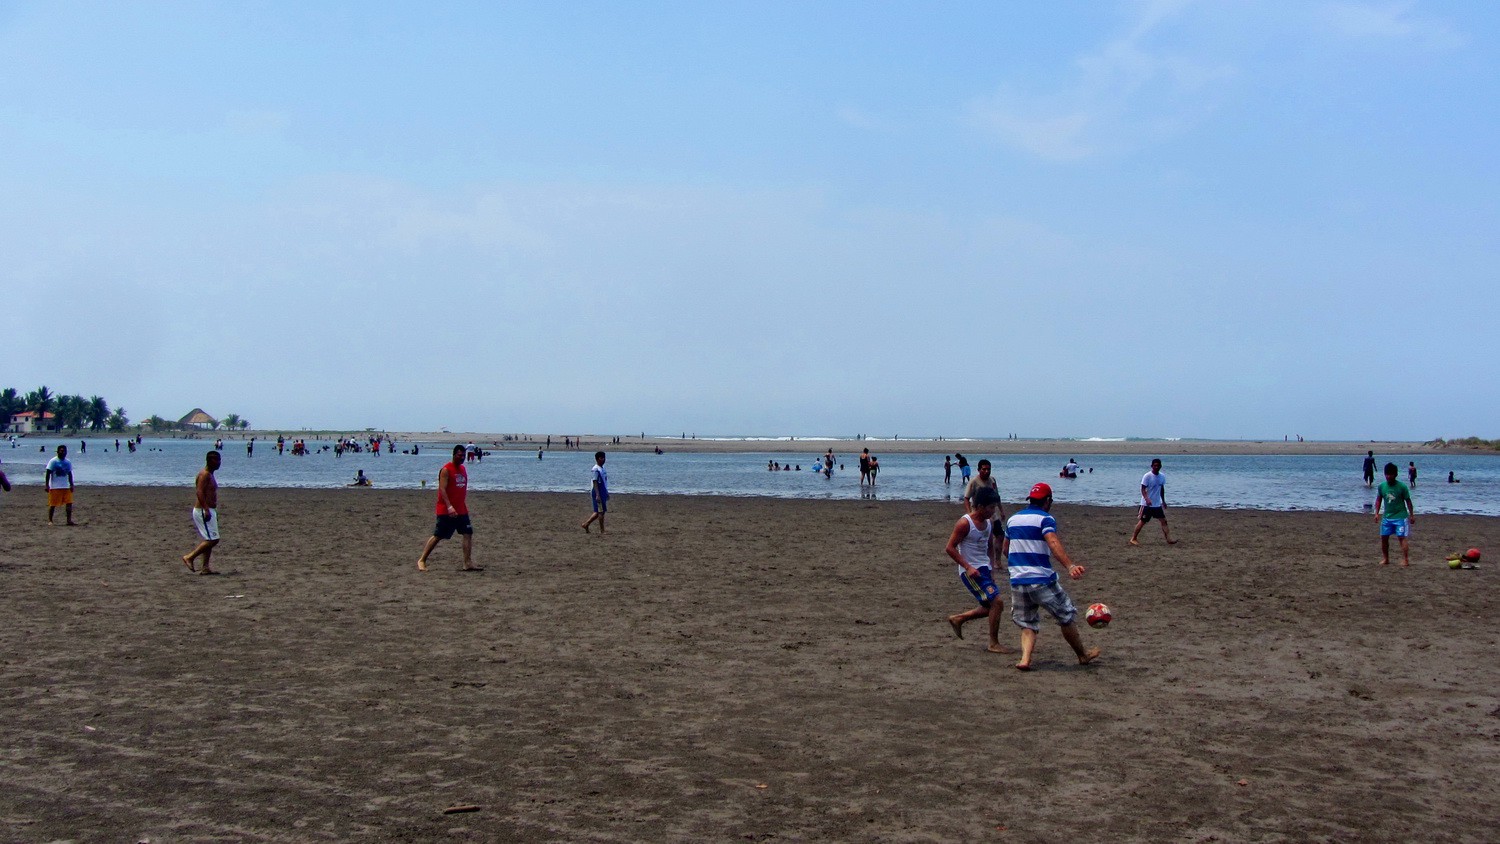 Football on the beach